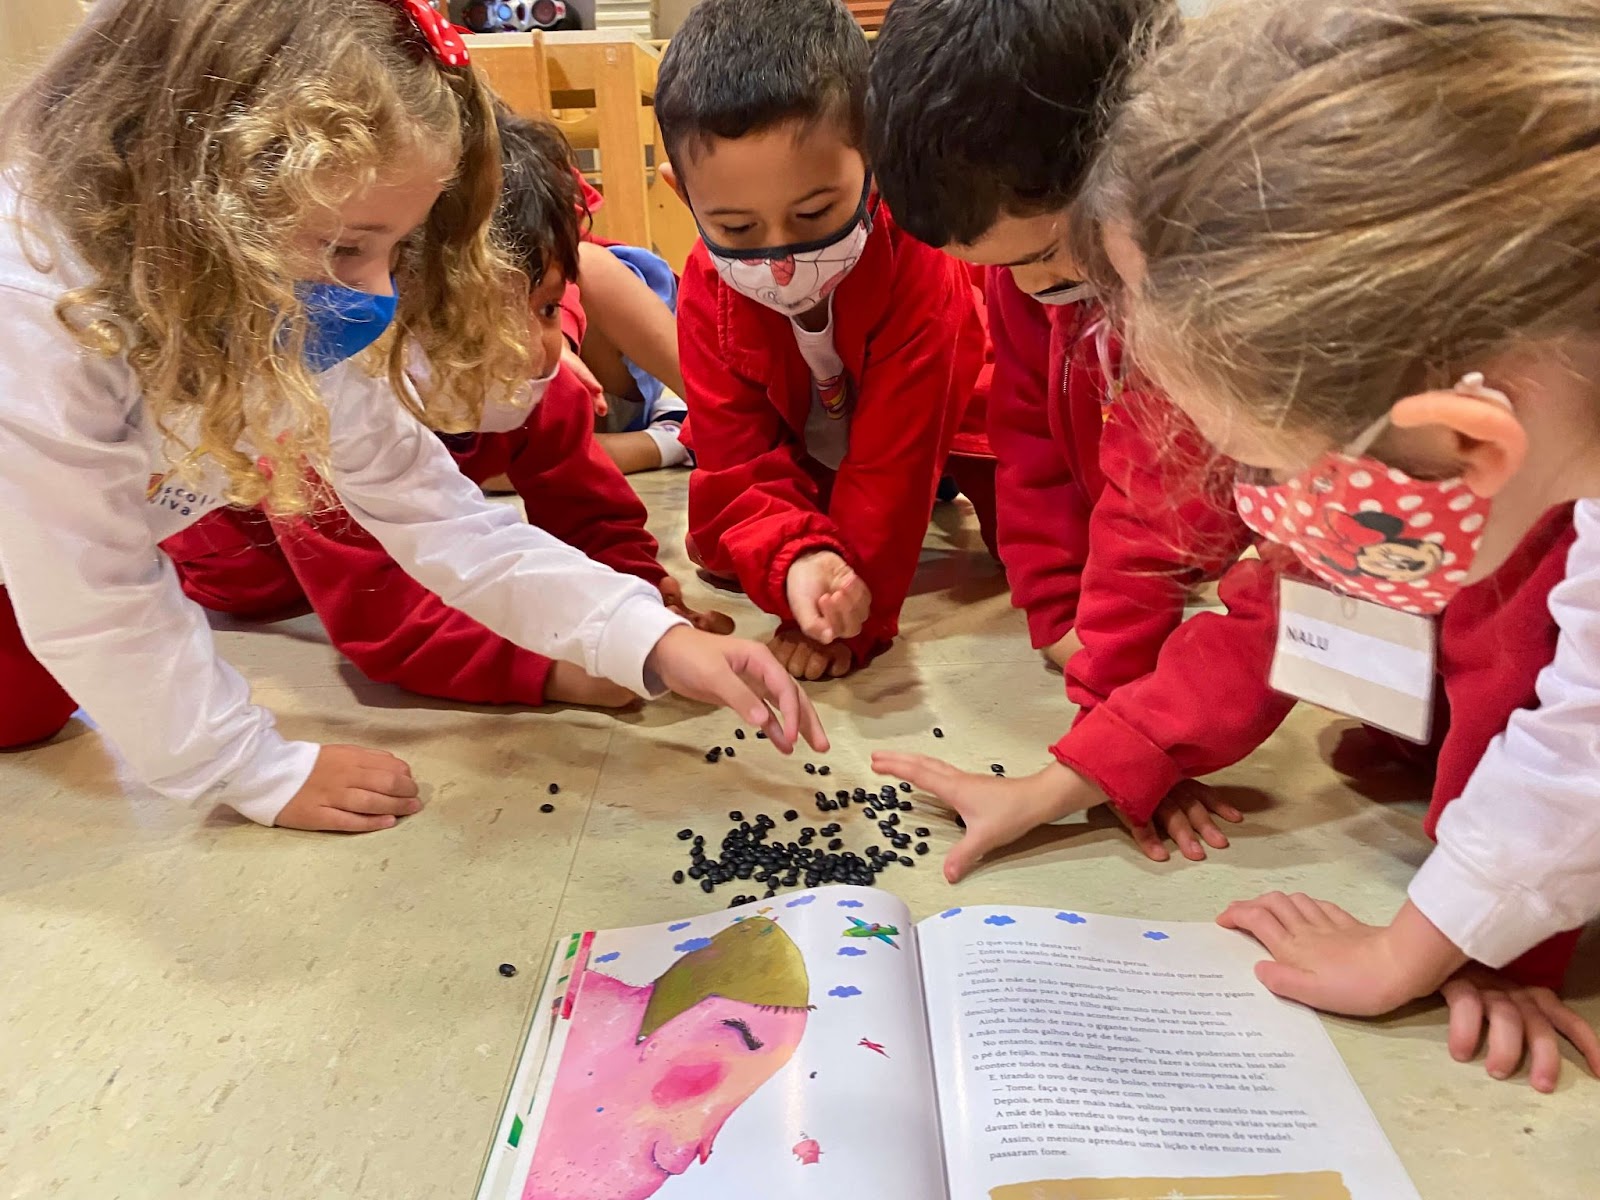 A imagem mostra crianças em torno de um livro e feijões.